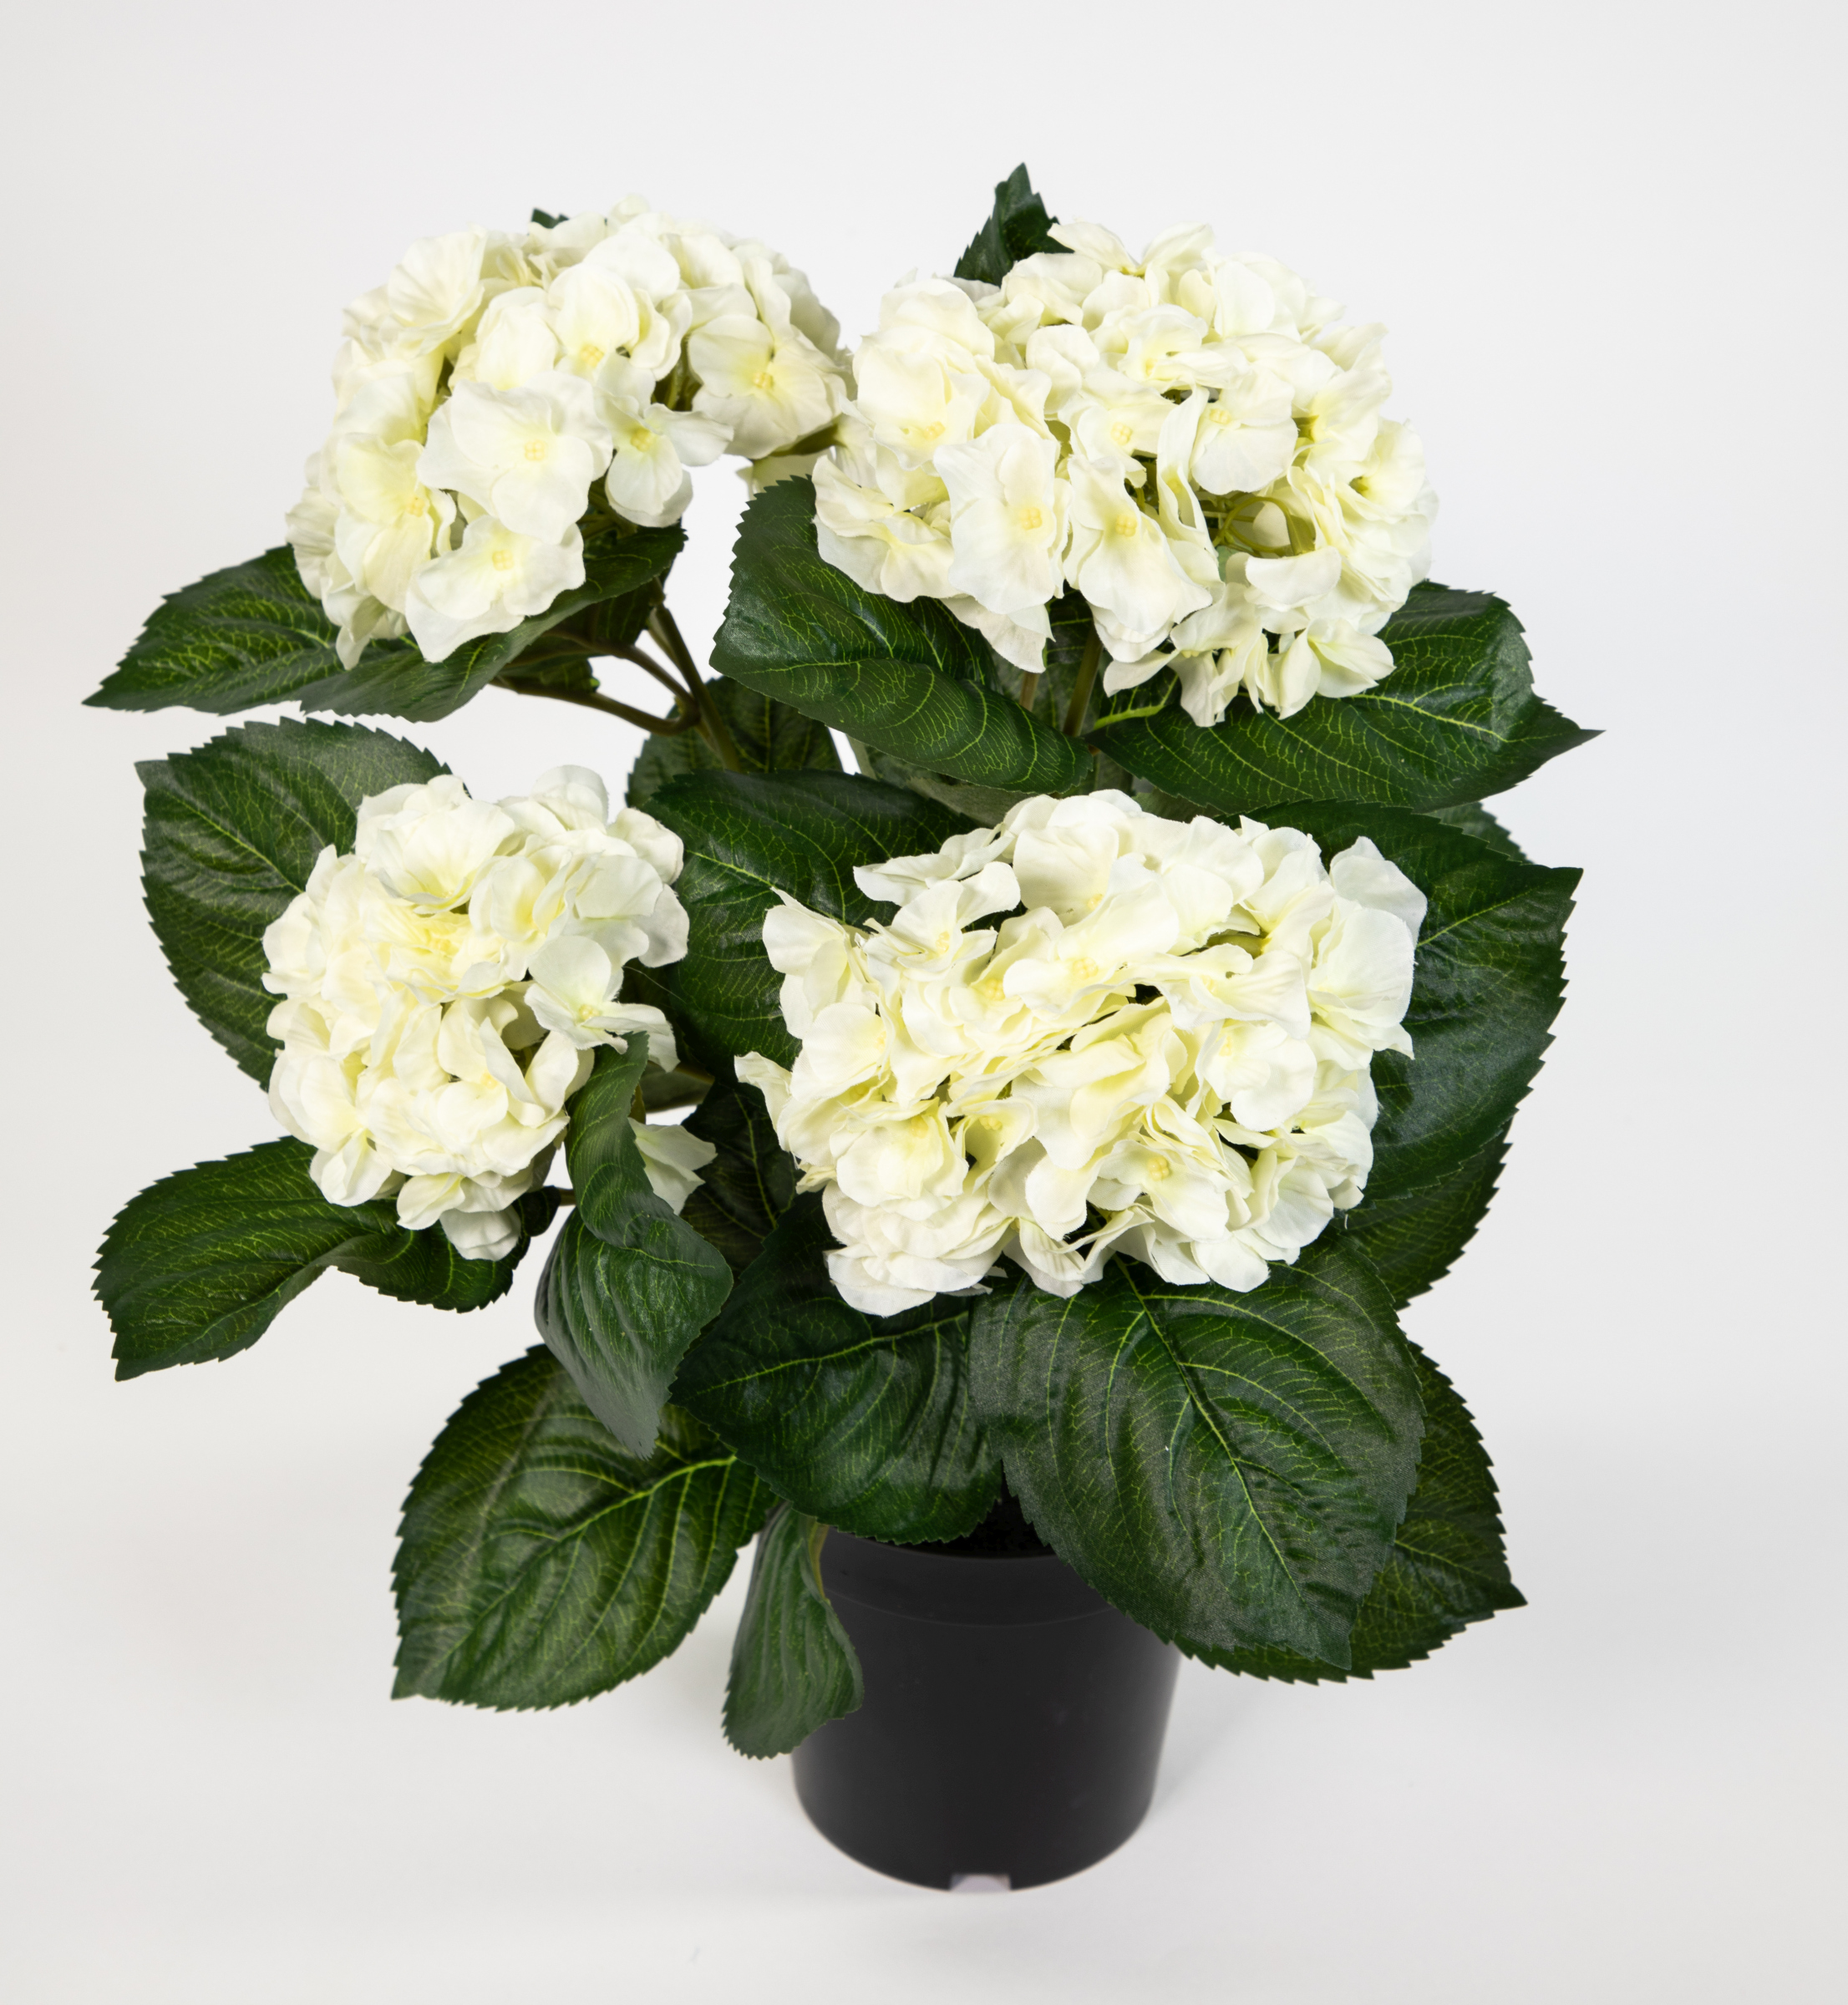 Hortensienbusch Deluxe 42cm weiß-creme im Topf LM Kunstpflanzen künstliche Hortensie Pflanzen Blumen